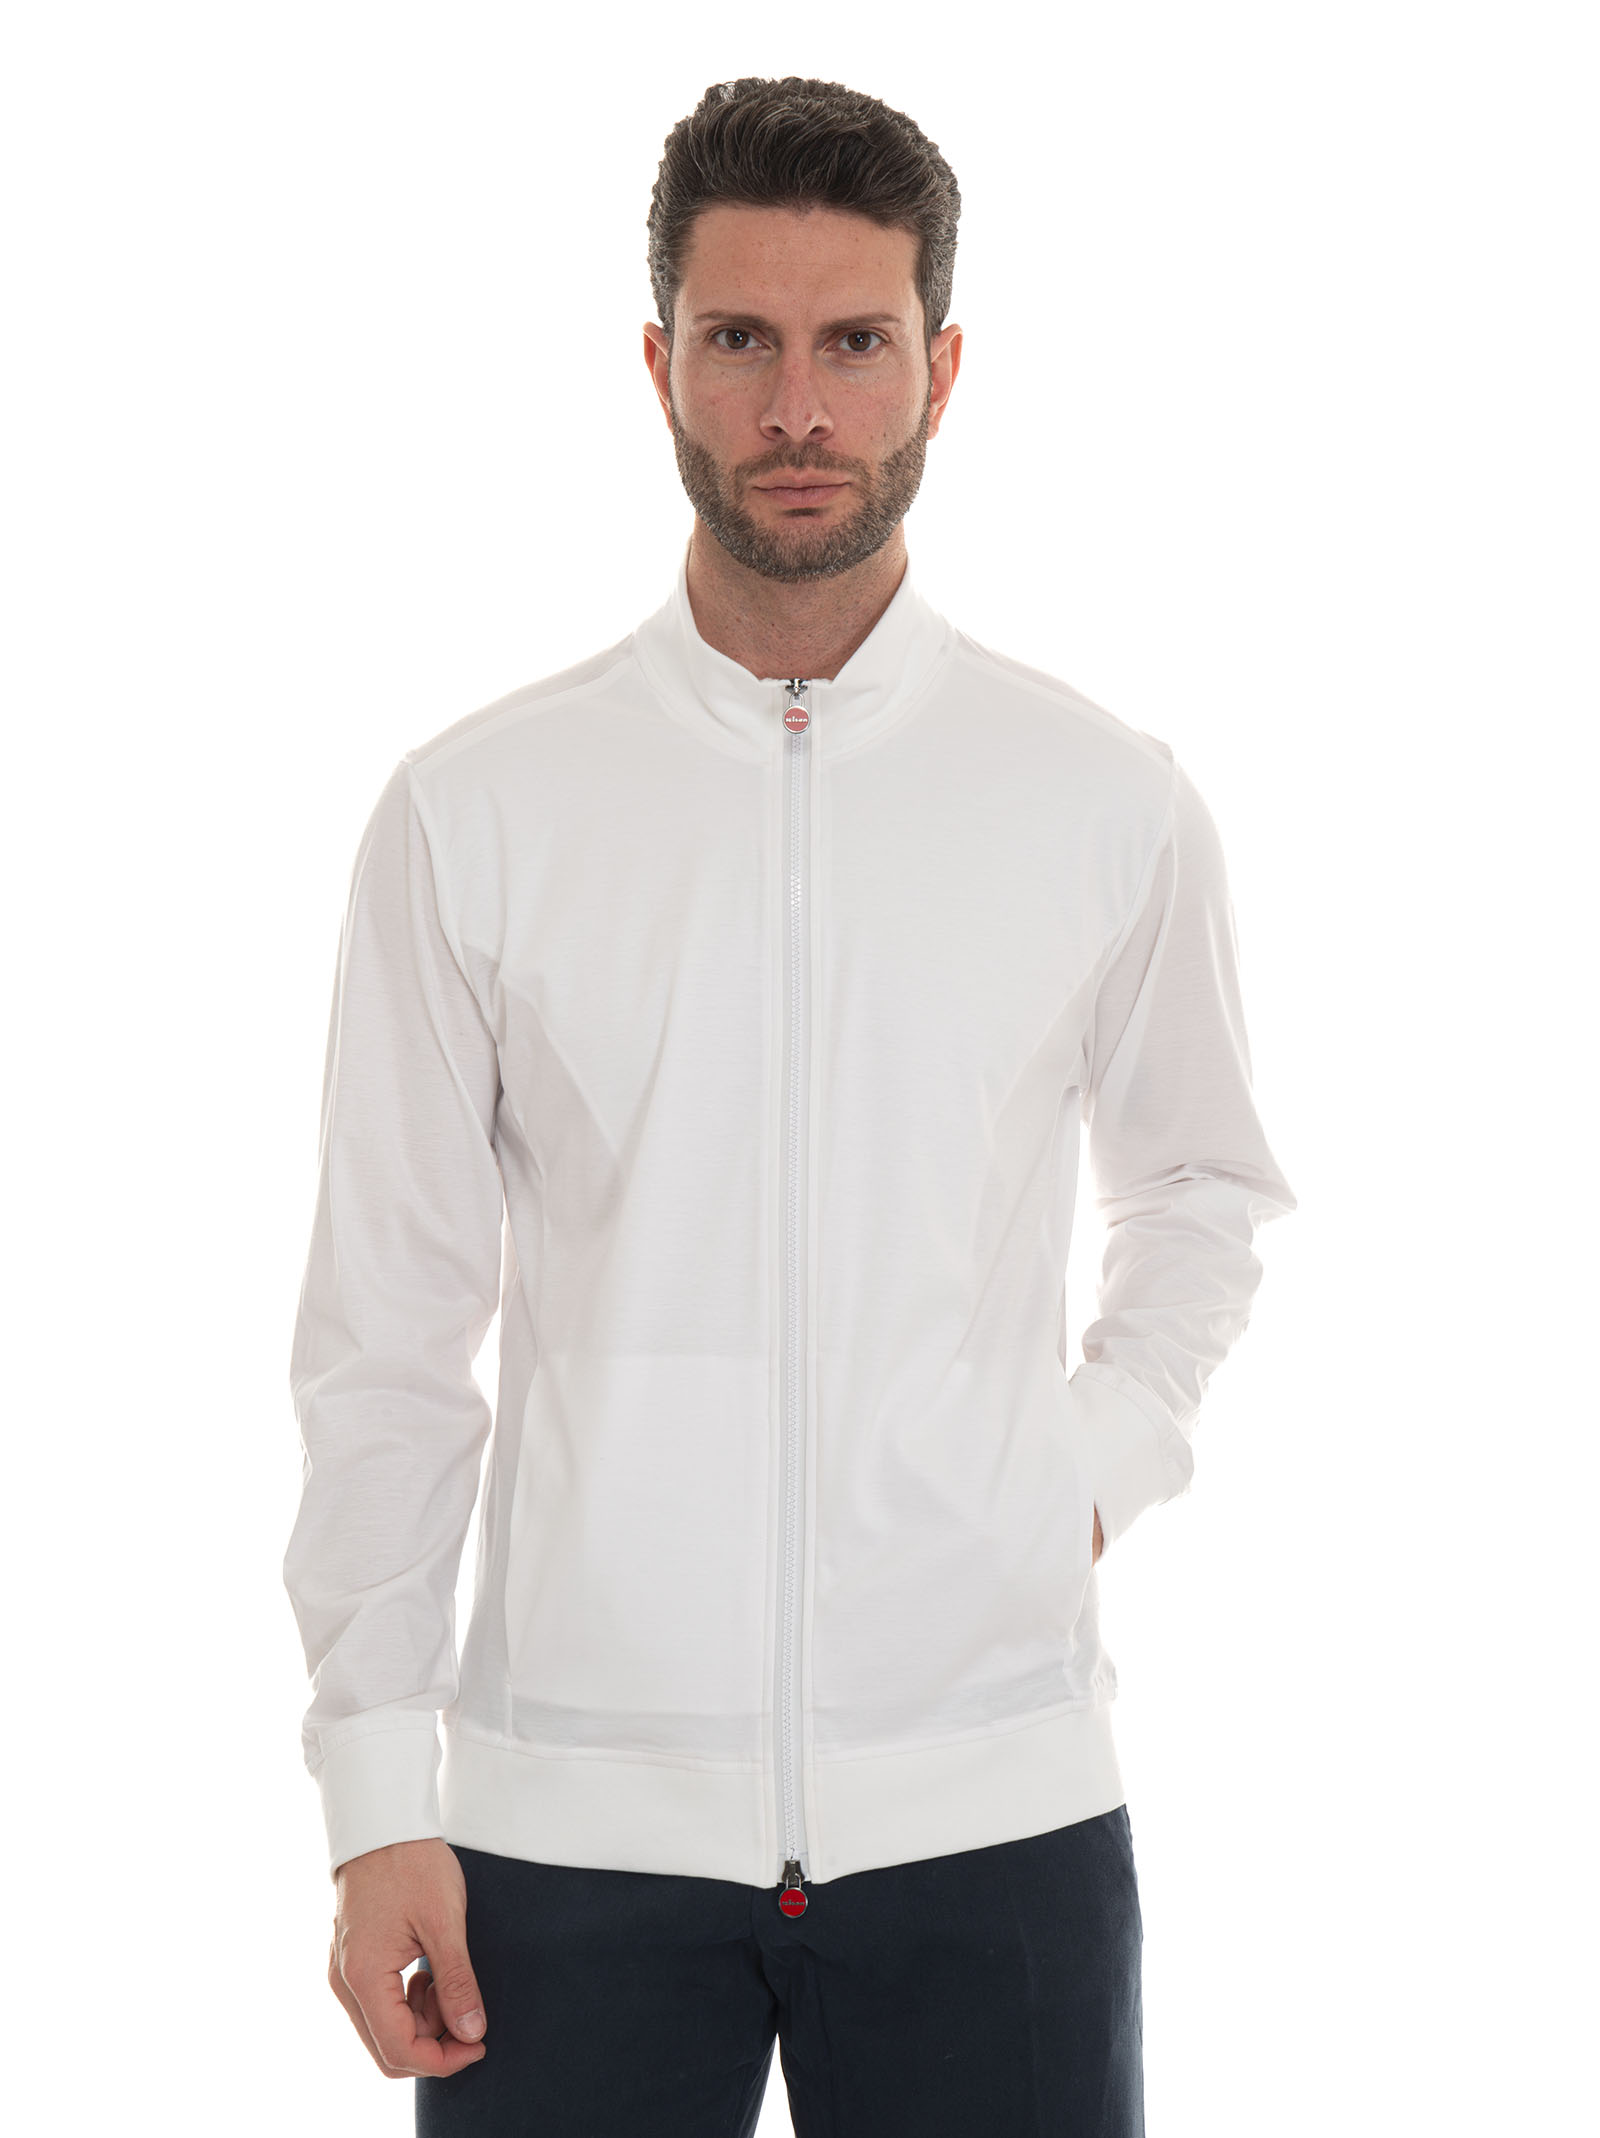 Kiton Zip Sweatshirt With Hood In White